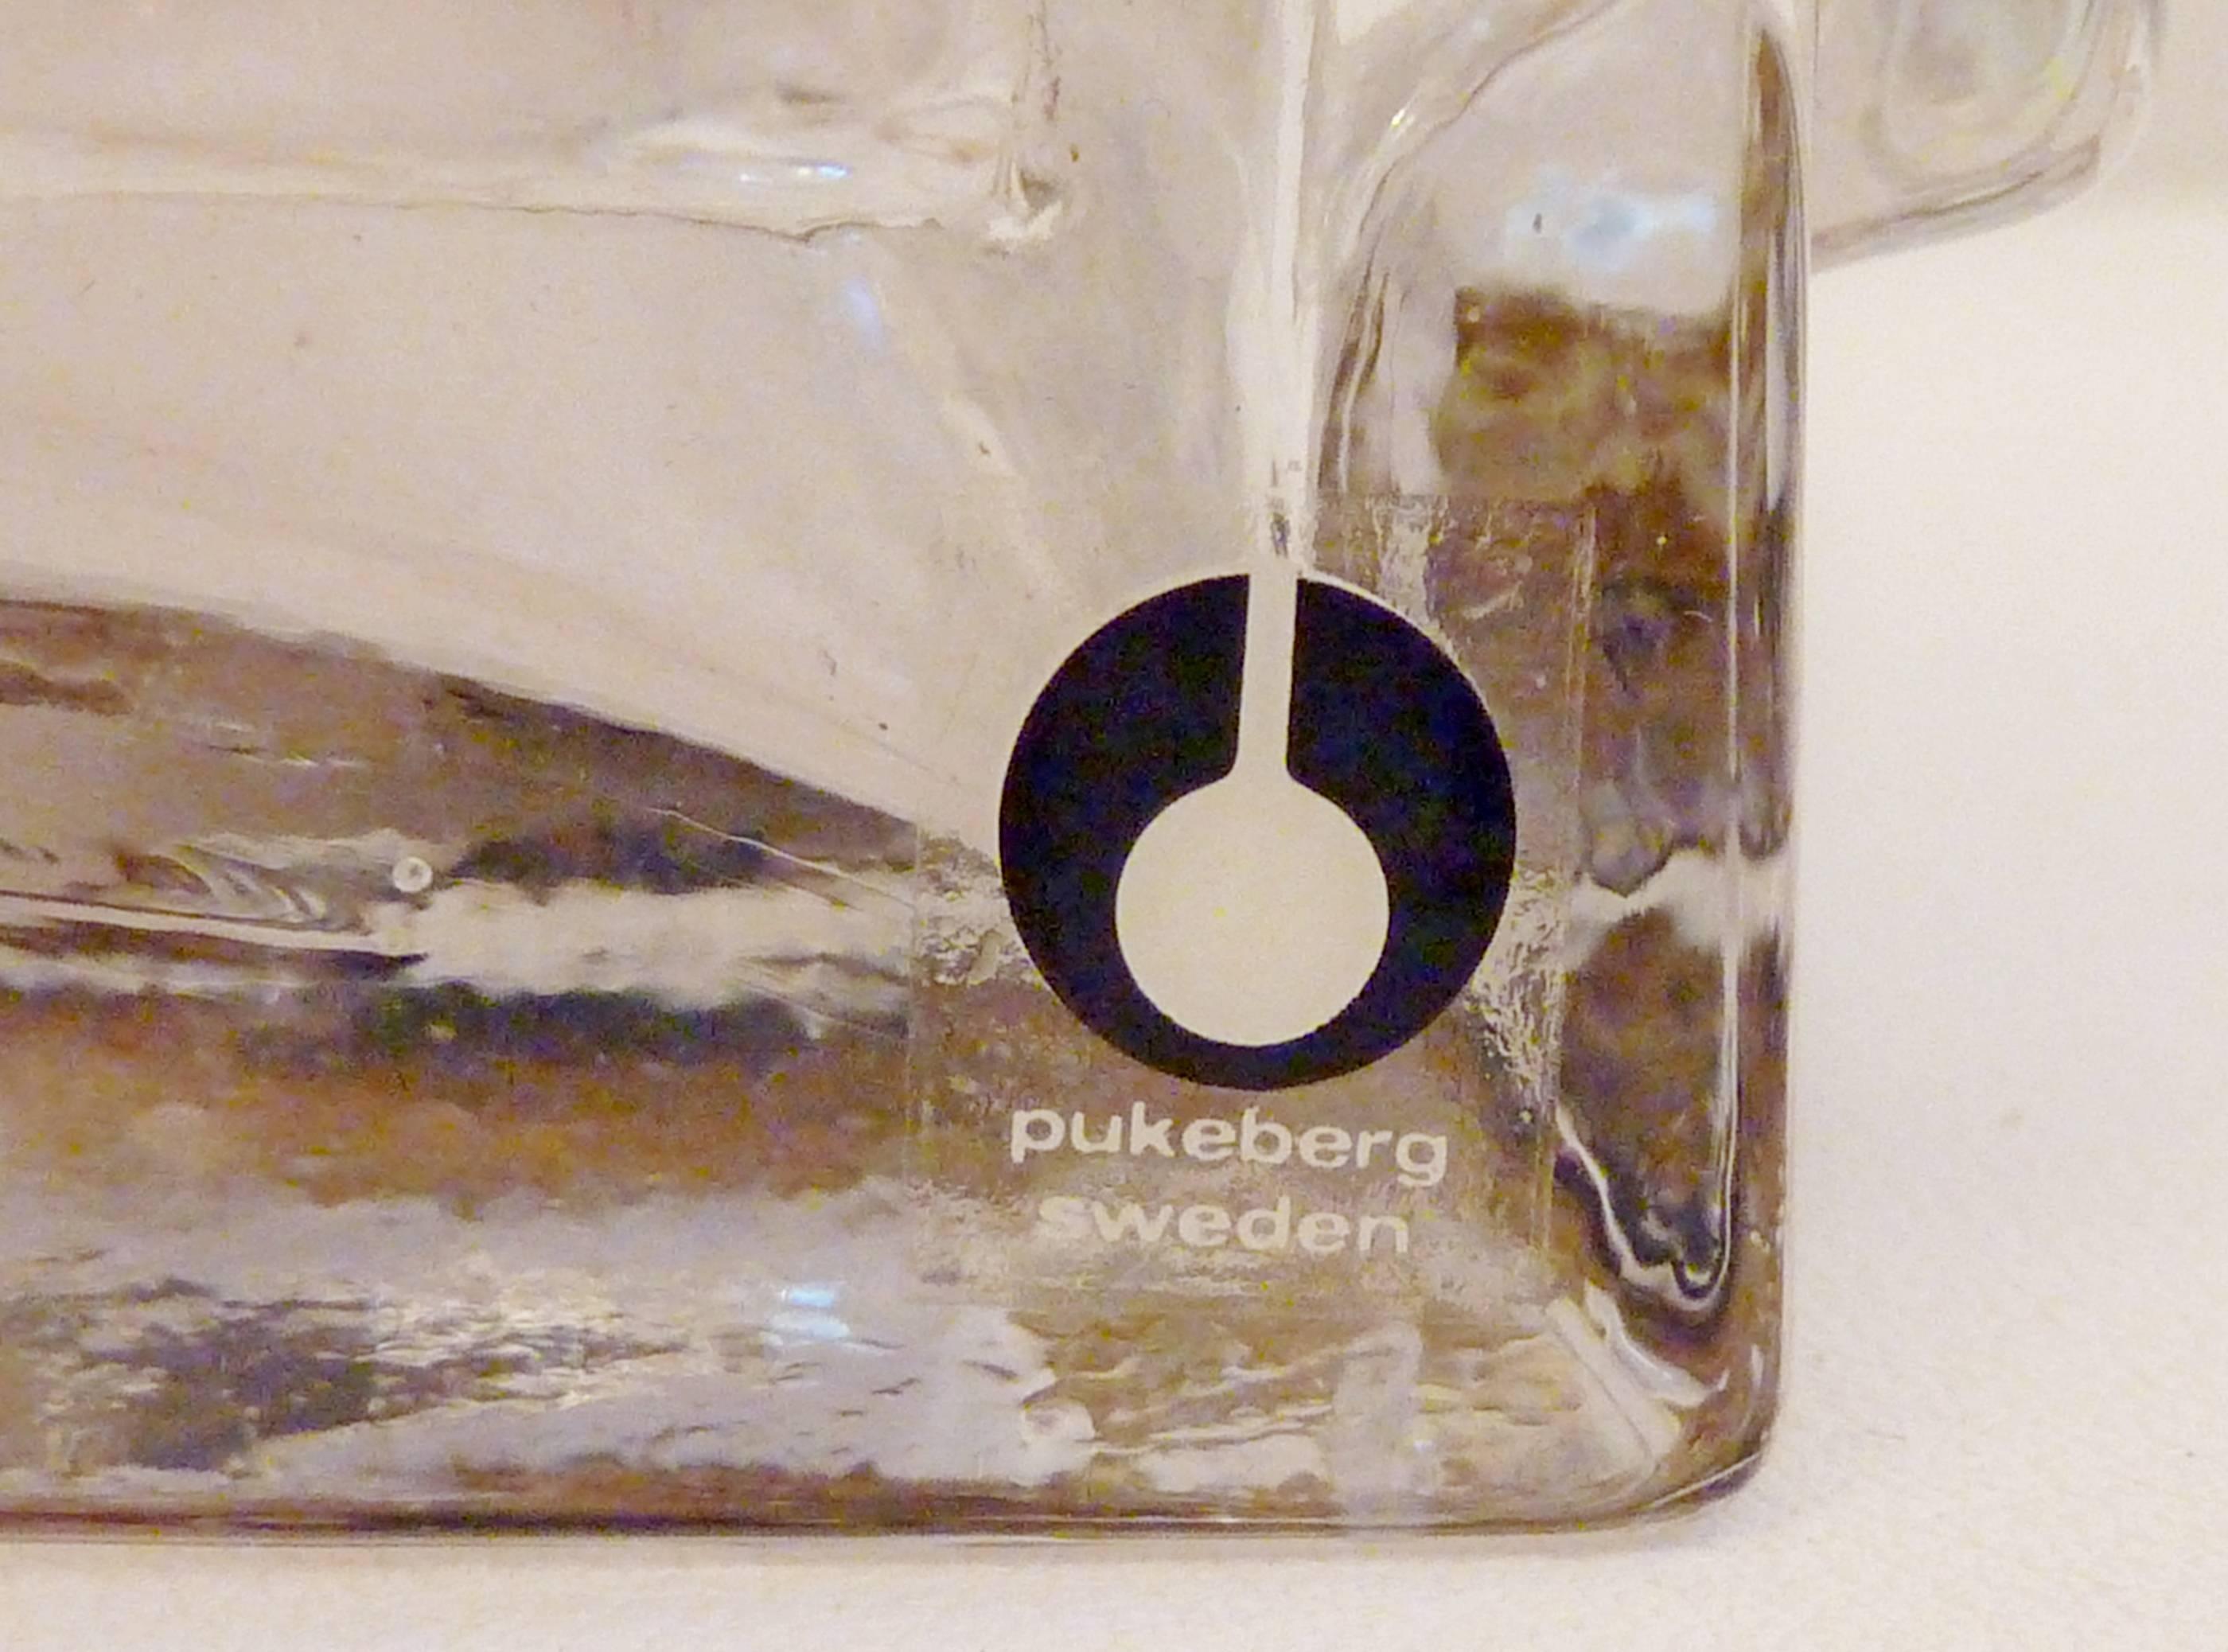 Lampe de table en verre transparent du fabricant suédois Pukeberg avec autocollant original sur la base. Livré avec un abat-jour blanc doublé d'argent qui reflète bien la lumière.